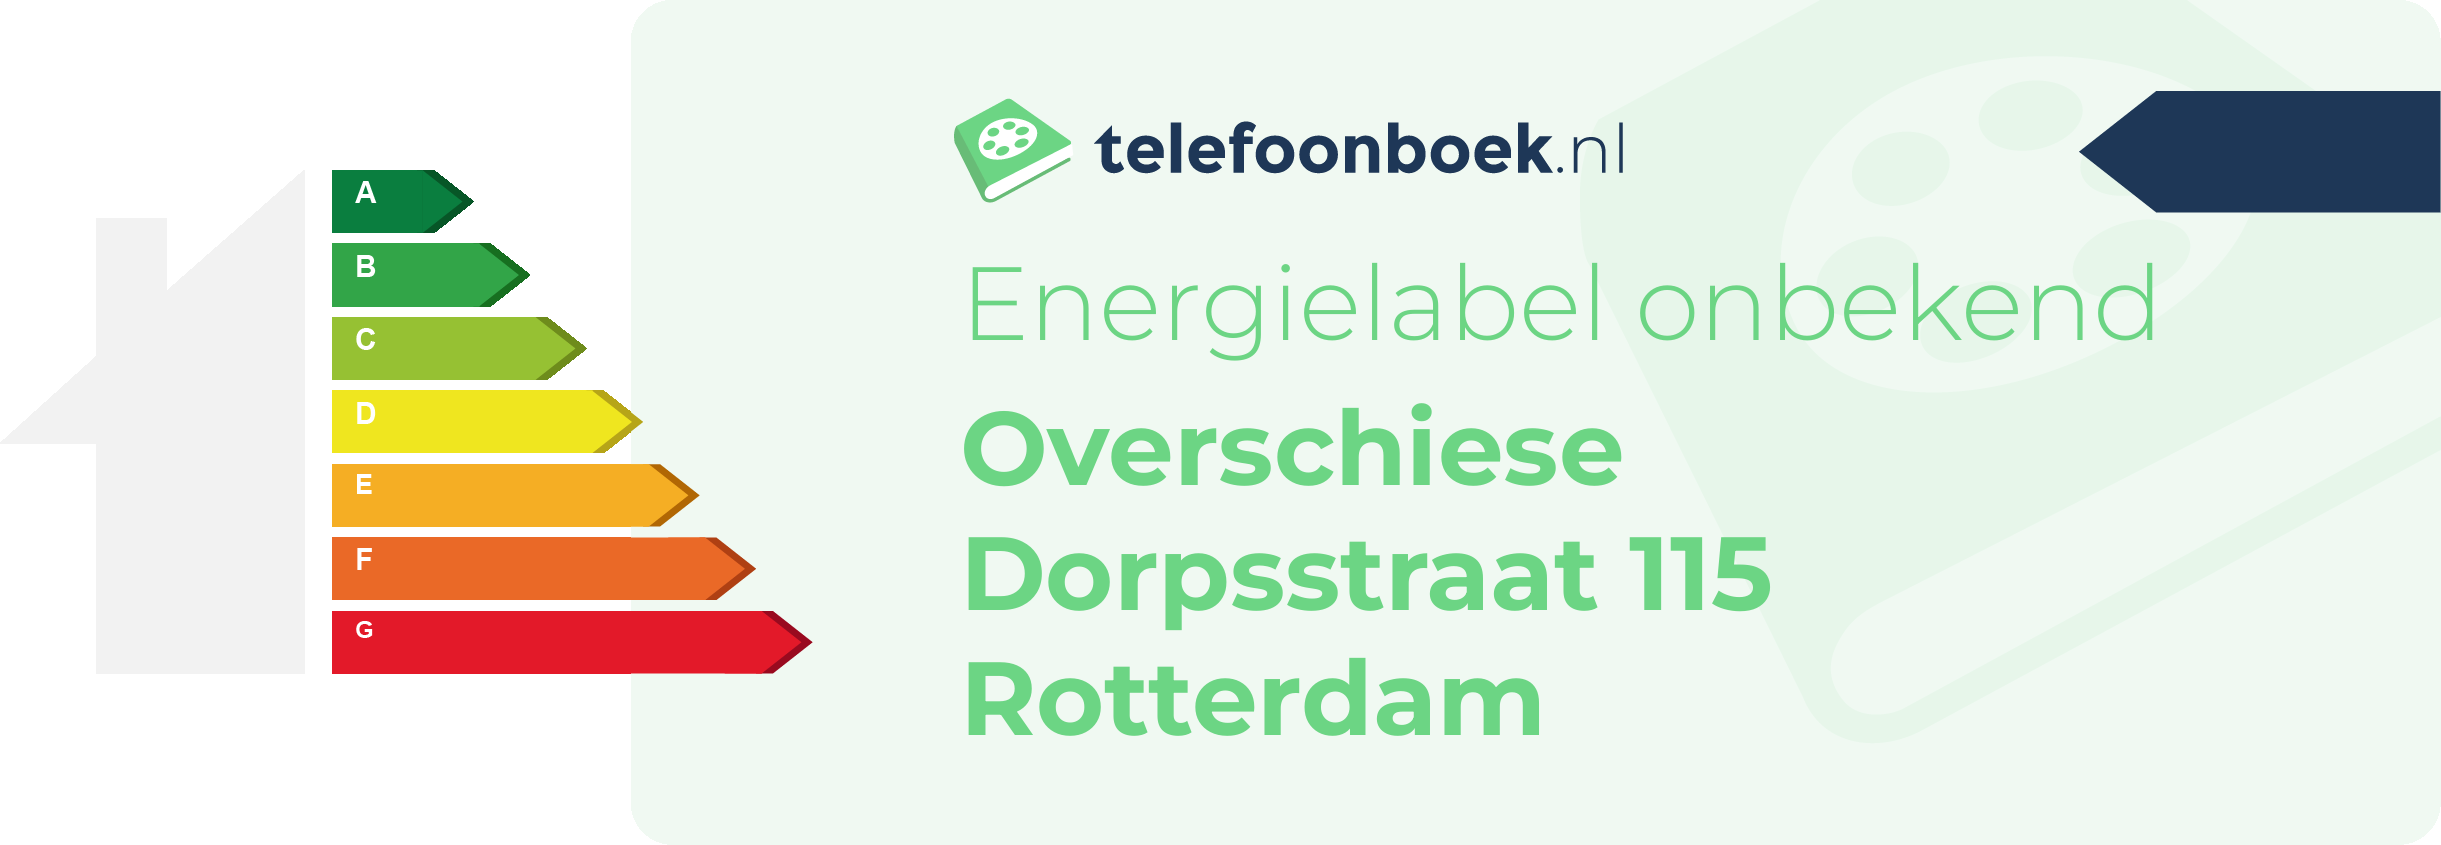 Energielabel Overschiese Dorpsstraat 115 Rotterdam